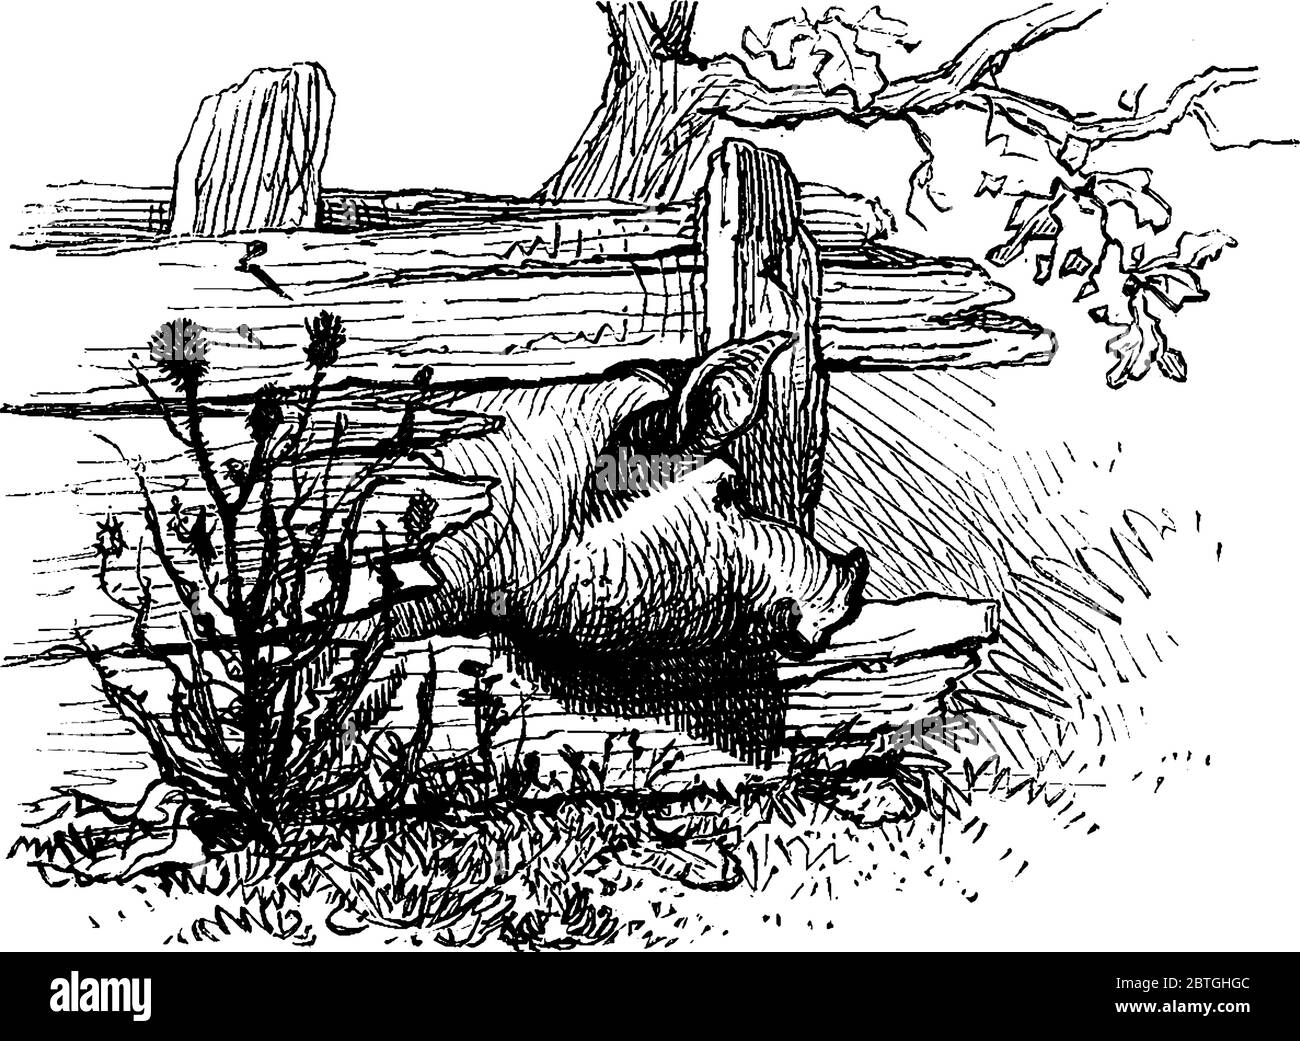 Il maiale domestico si blocca la testa in una recinzione di legno., disegno di linea vintage o illustrazione di incisione. Illustrazione Vettoriale